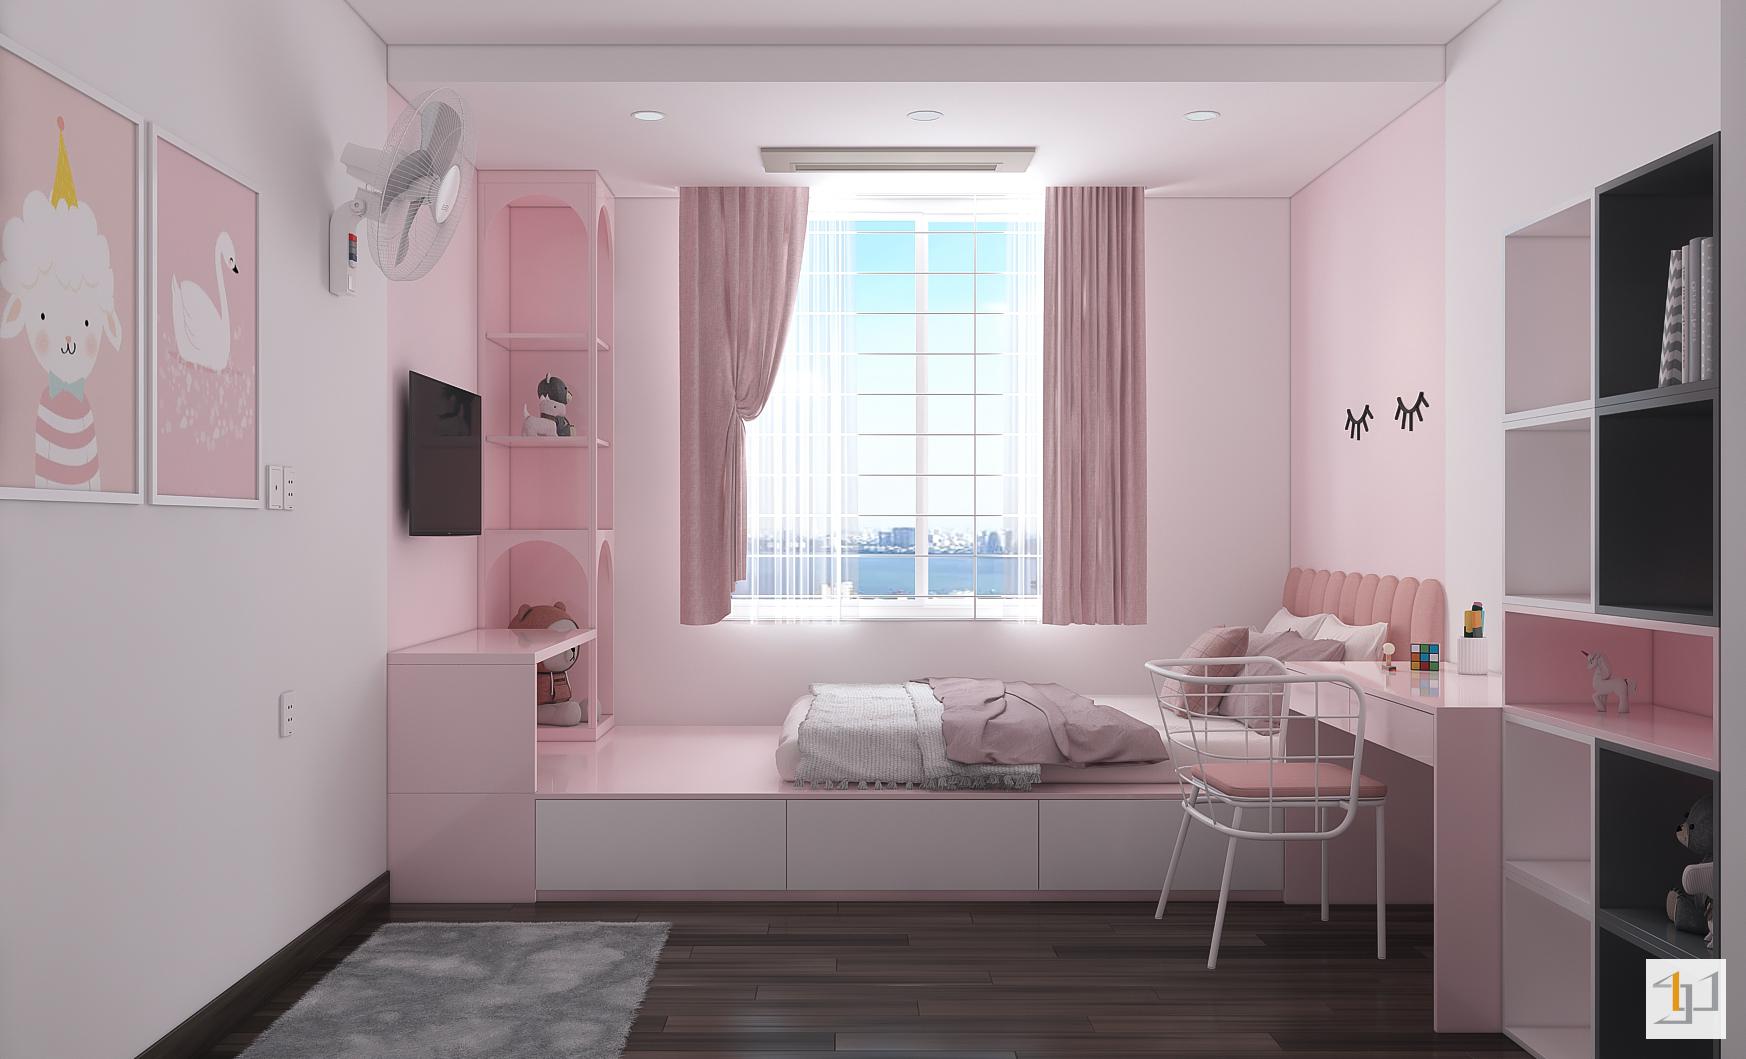 Thiết kế nội thất căn hộ 105m2 màu hồng